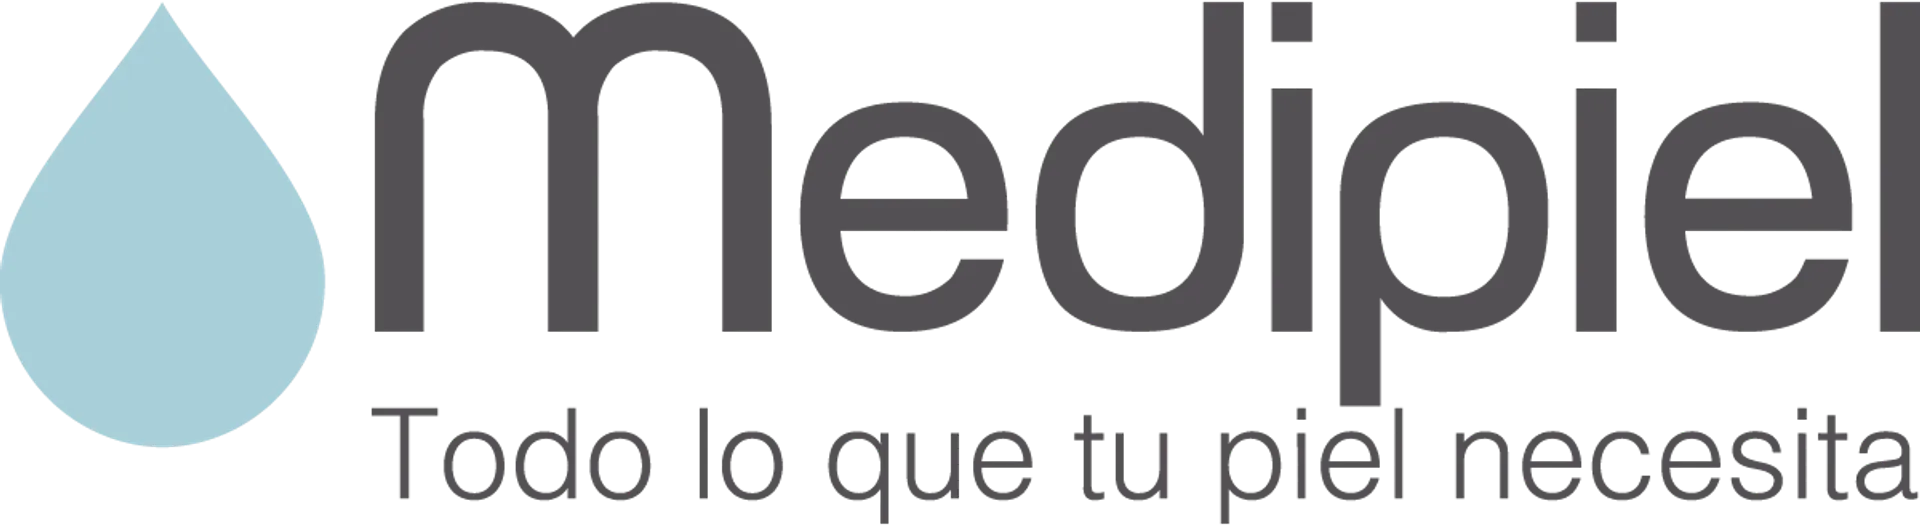 MEDIPIEL logo de catálogo